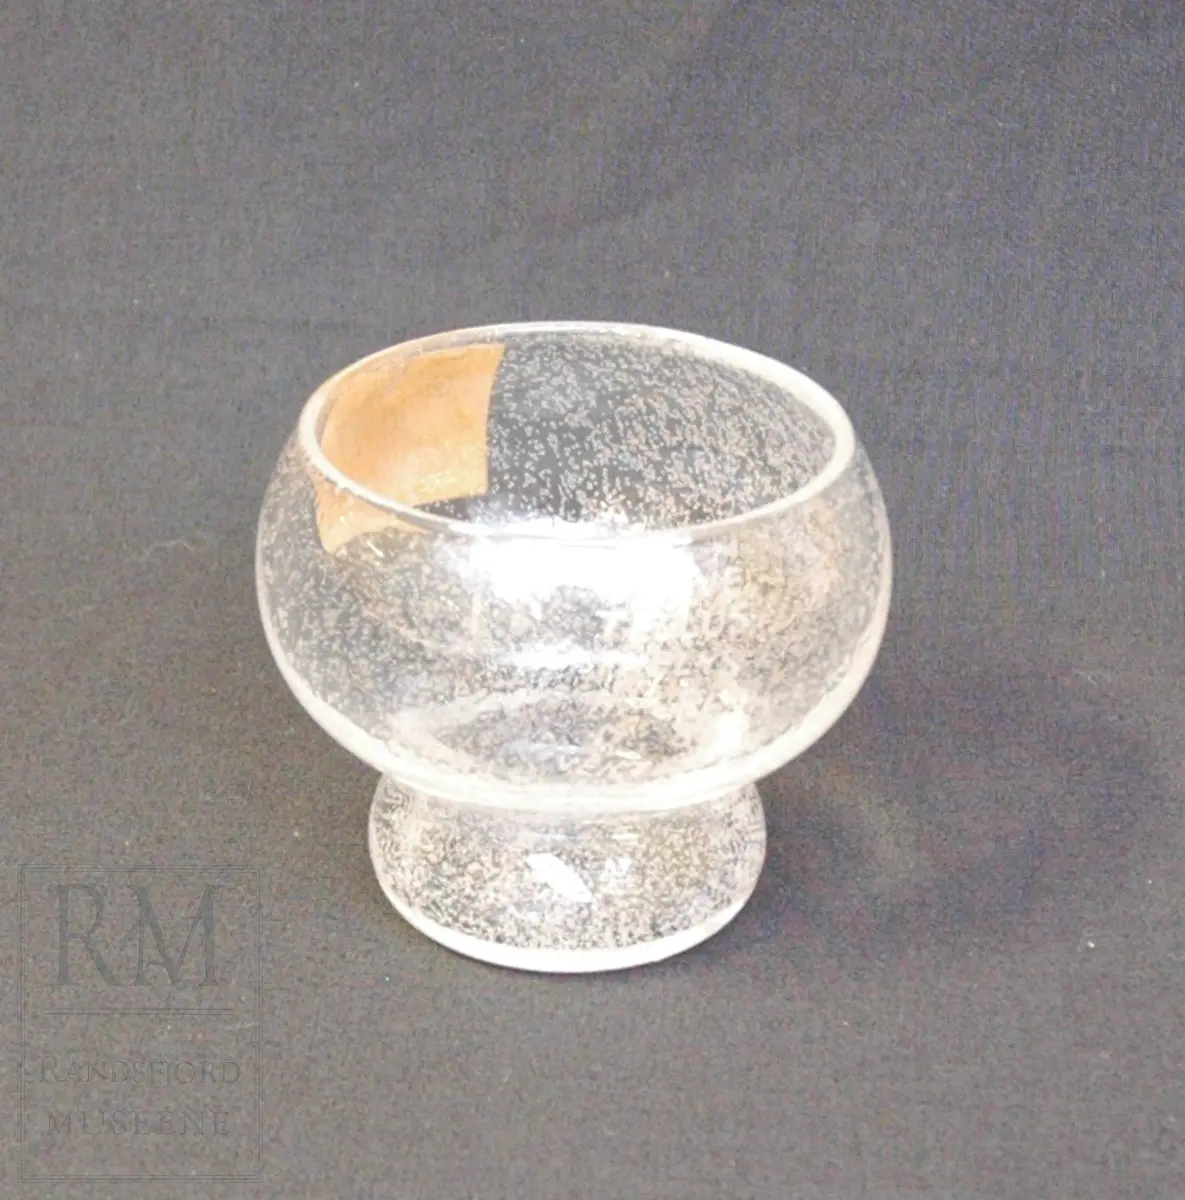 Form: Rund, med stett. Små bobler i glasset
